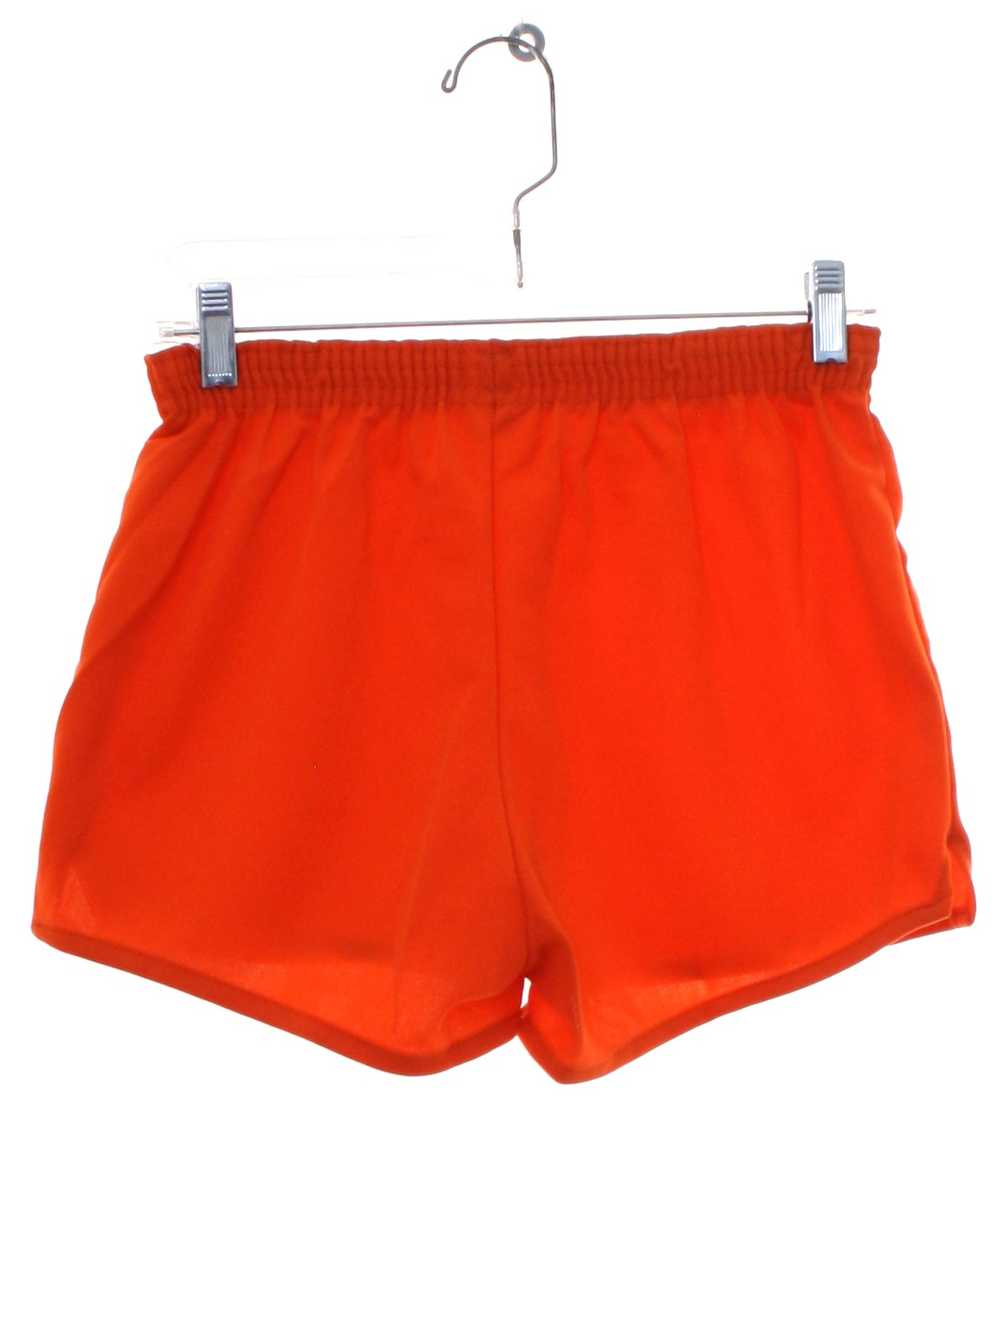 soffe shorts - Gem